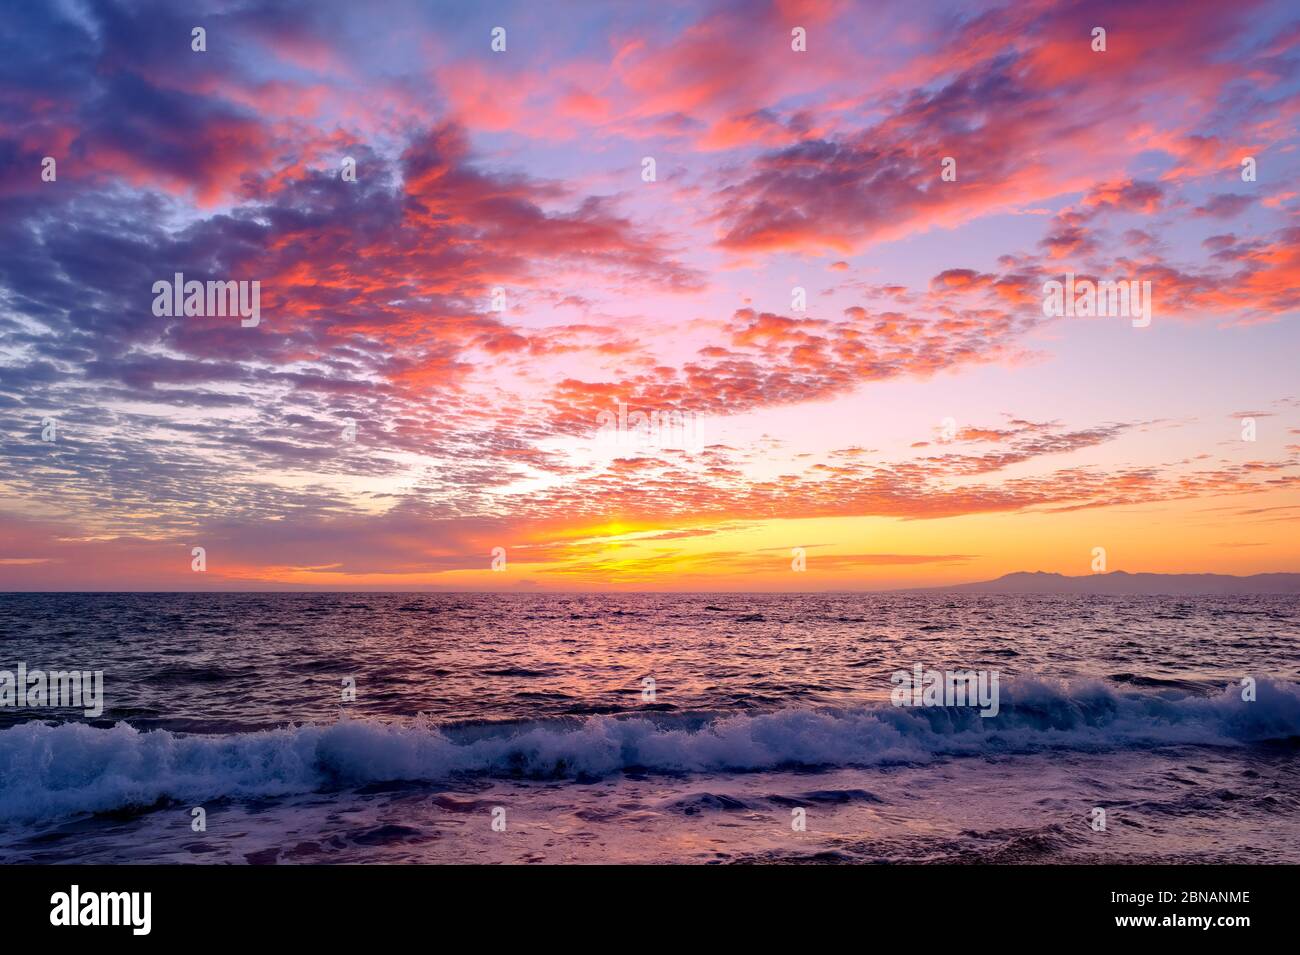 Ocean Sunset ist ein surreal schönes inspirierendes Bild von Hoffnung und Glauben Stockfoto